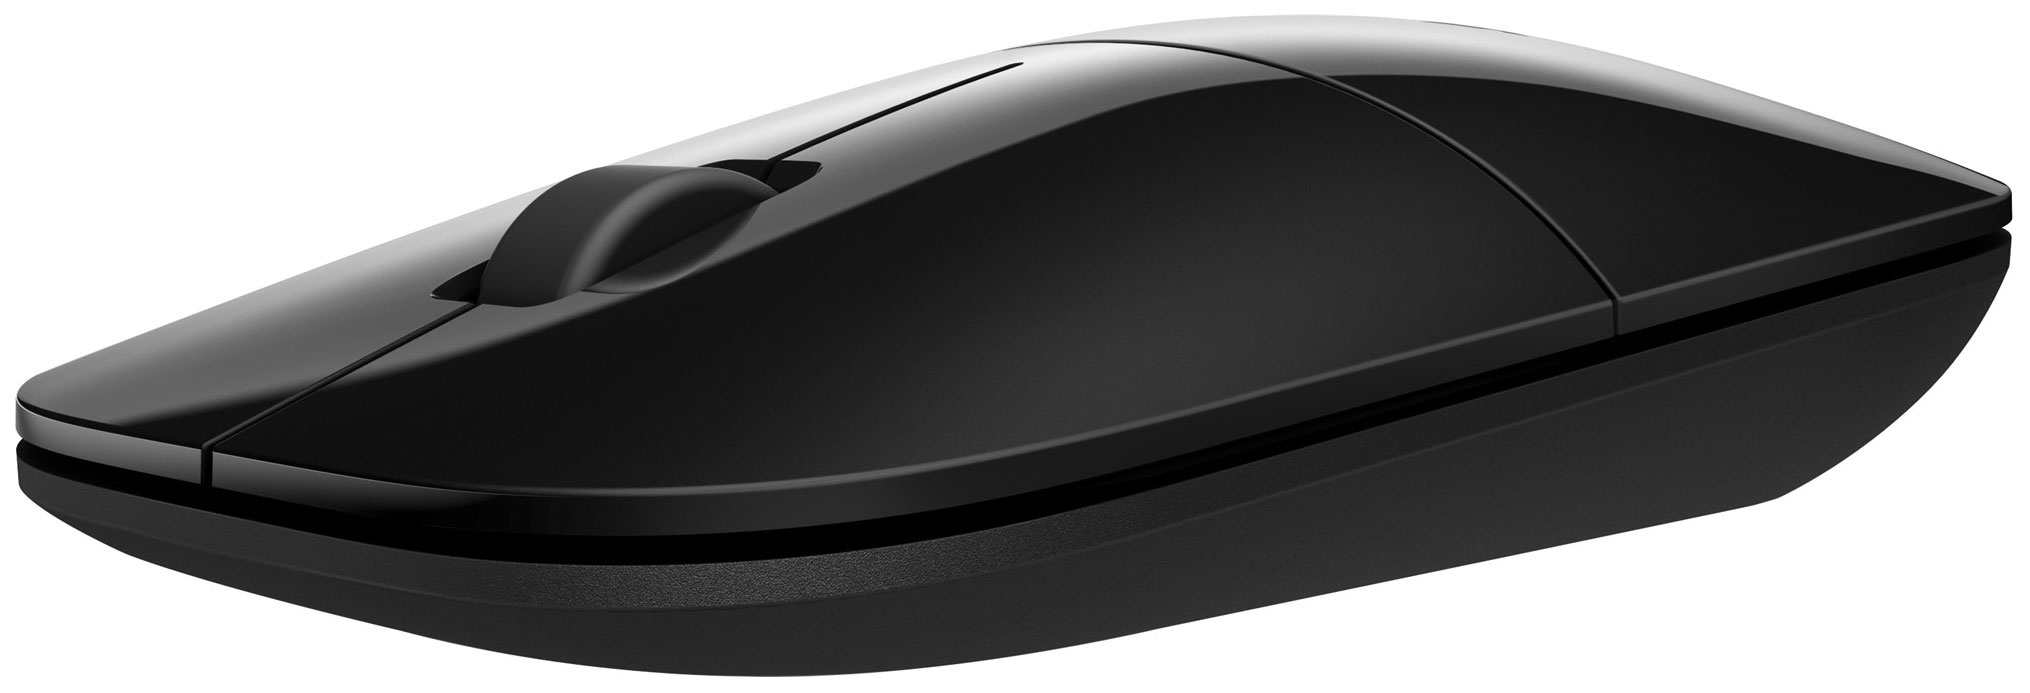 Беспроводная мышь HP Z3700 Black (V0L79AA)